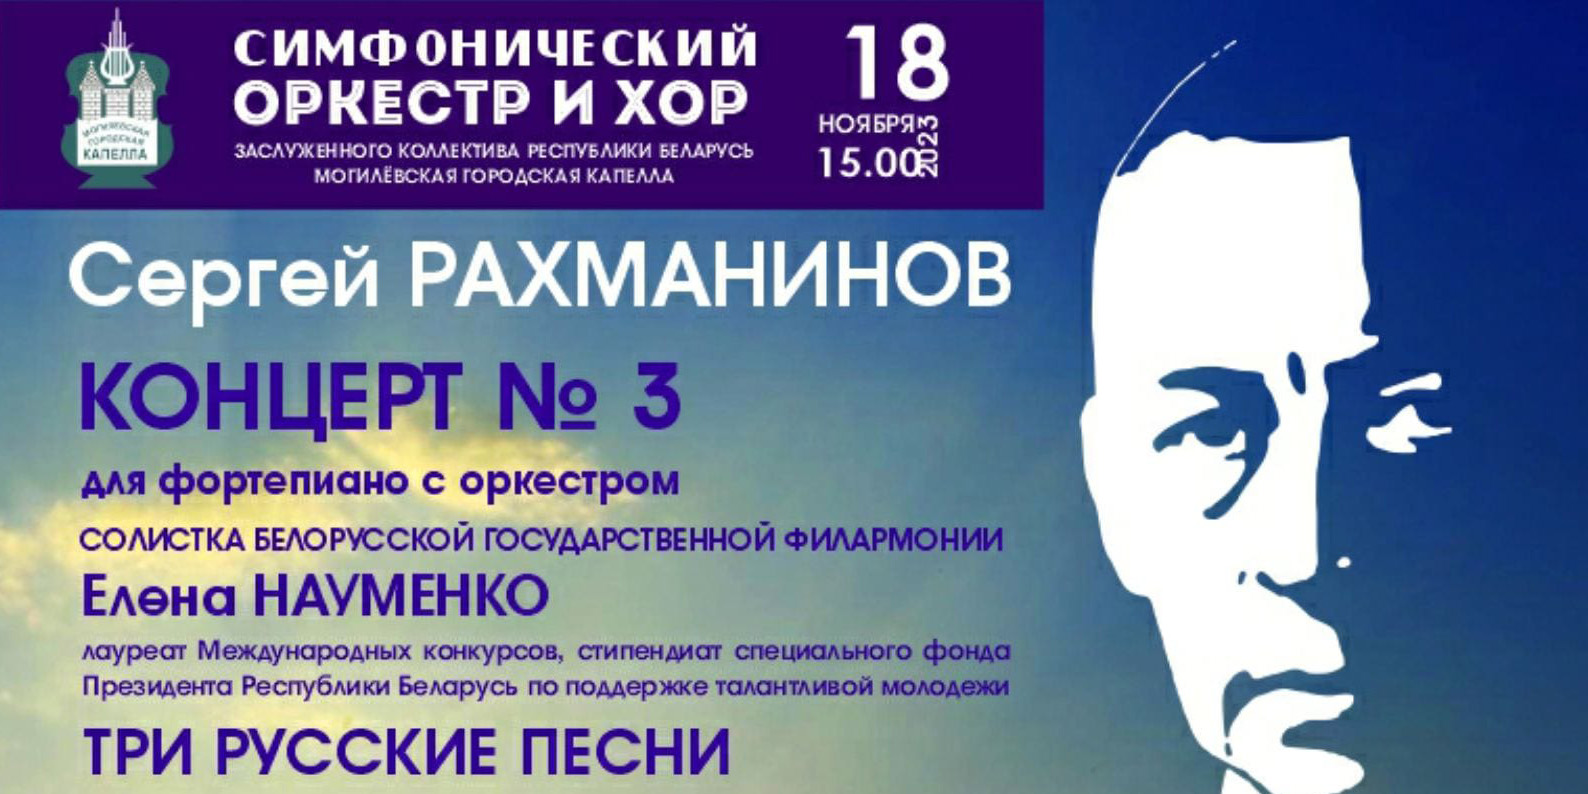 Могилевская городская капелла готовит концерт к 150-летию Сергея Рахманинова